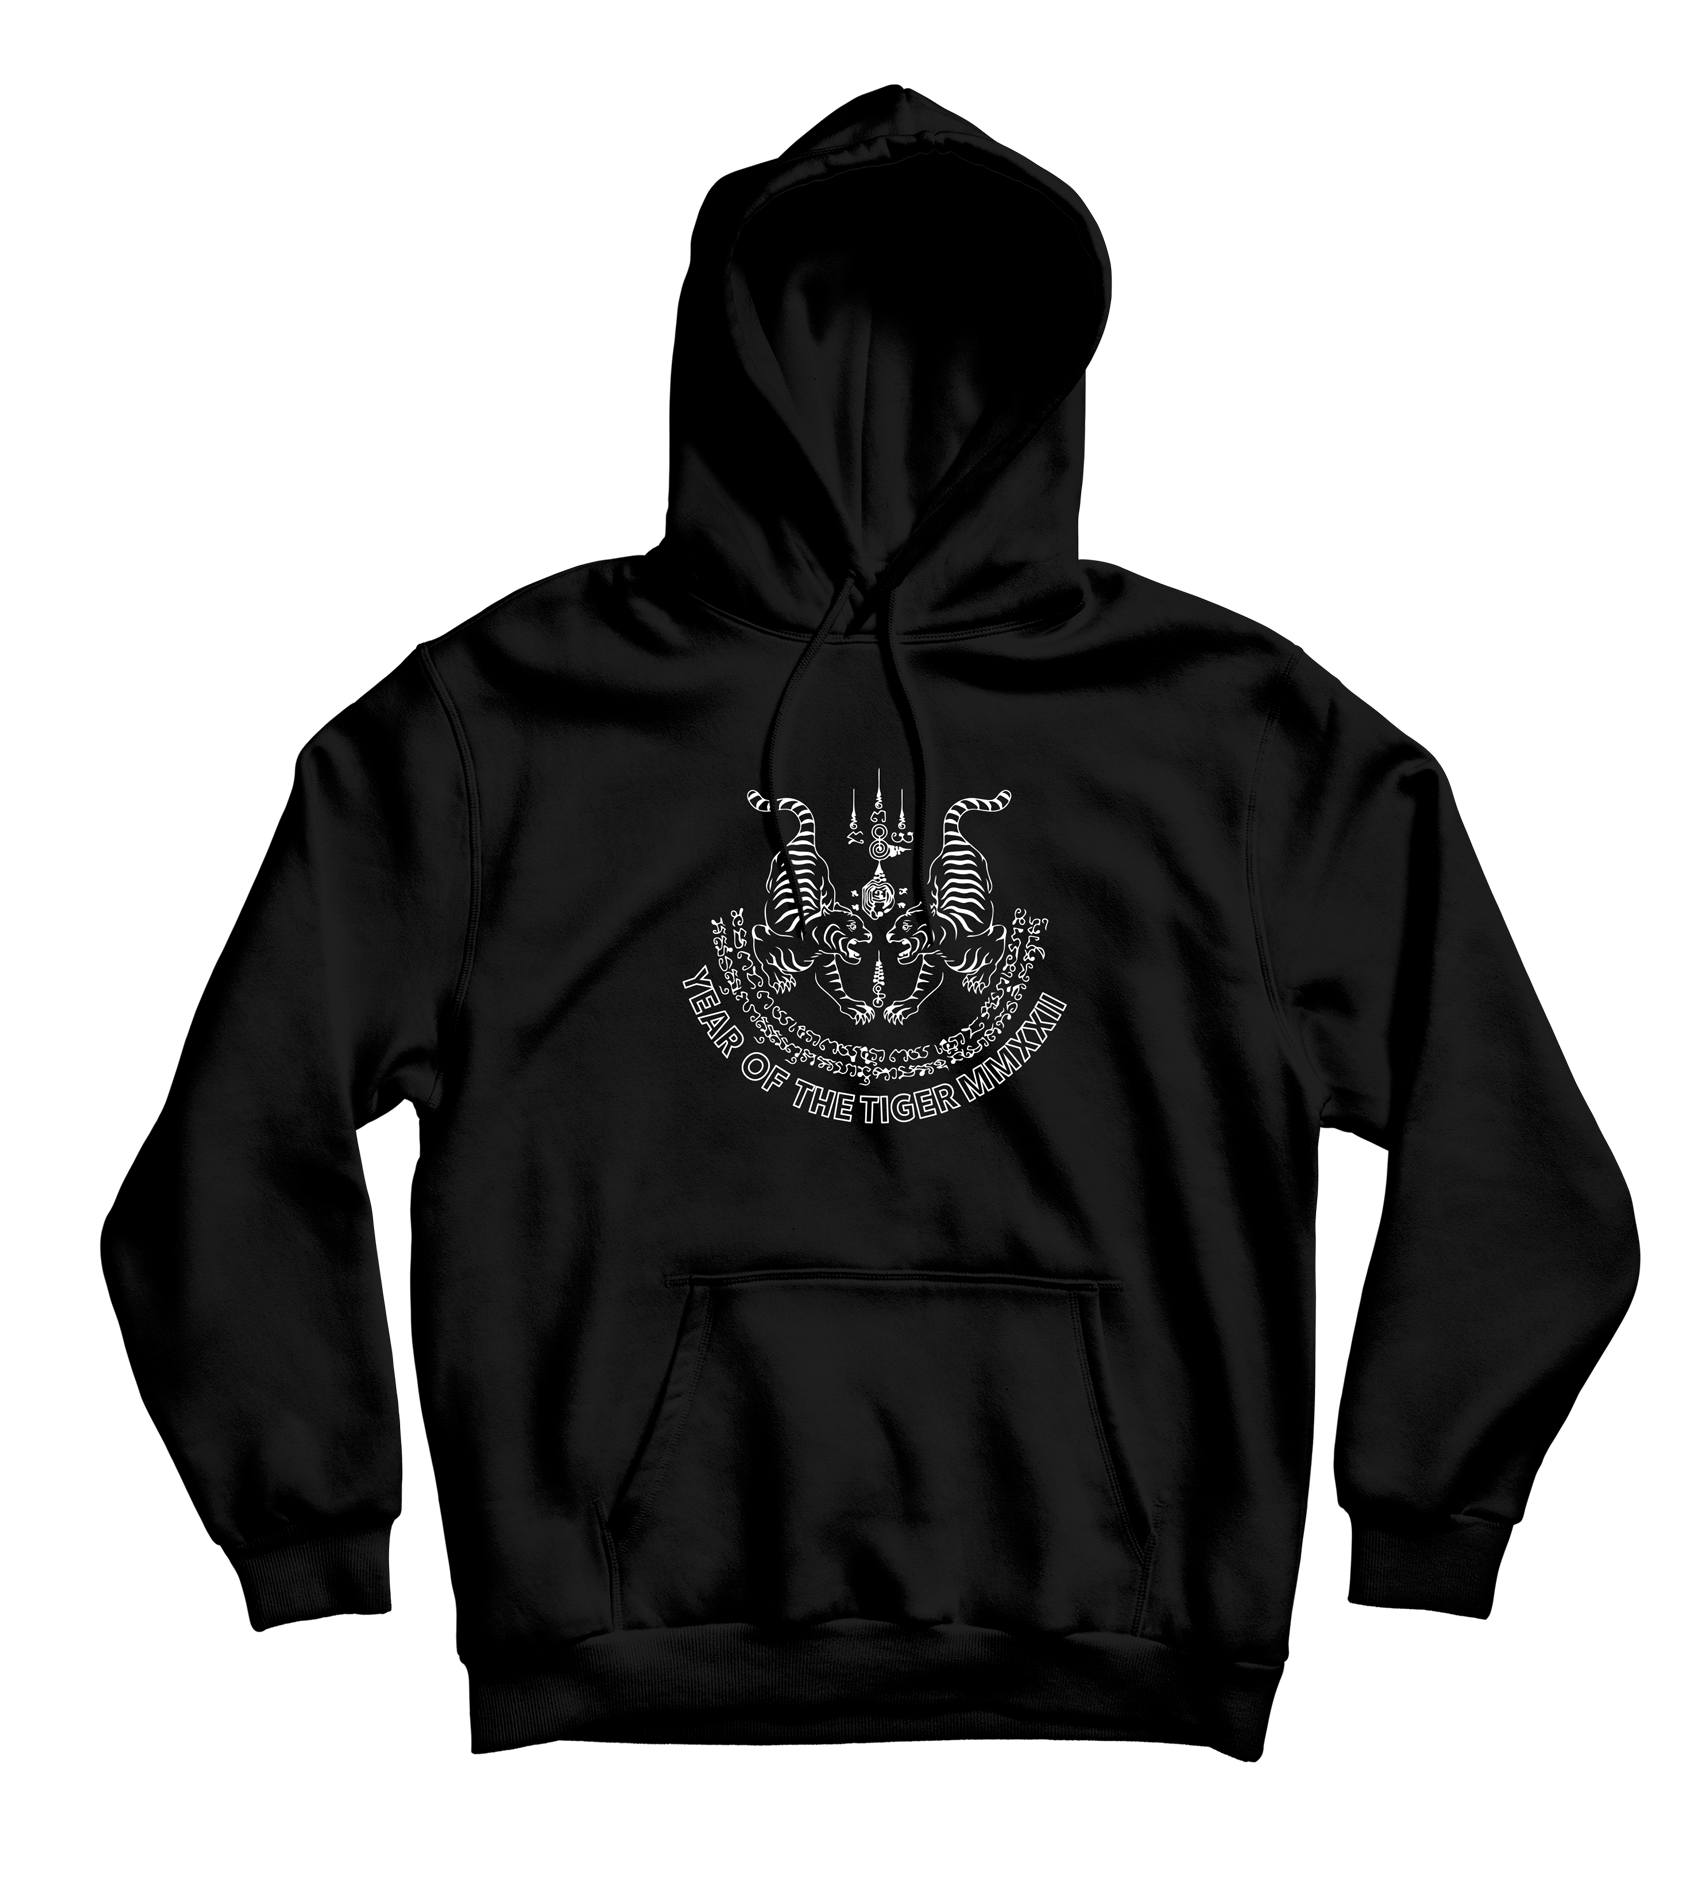 Year of the tiger hoodie black